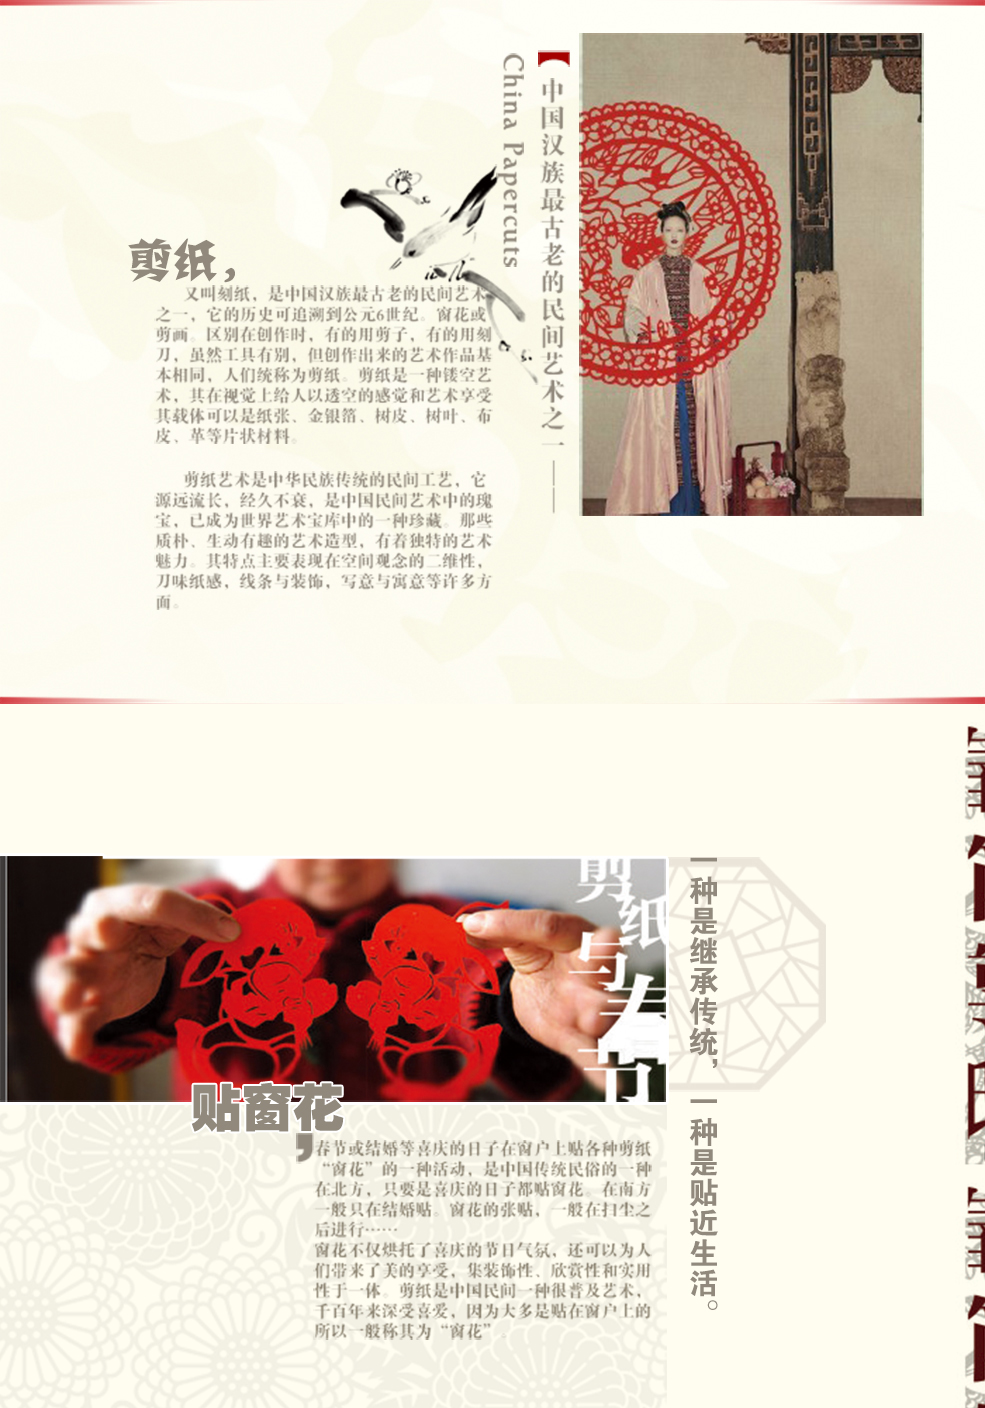 御祺轩中国民间特色工艺品剪纸窗花家居装饰玻璃贴植绒布365个祝福 红色 60厘米直径